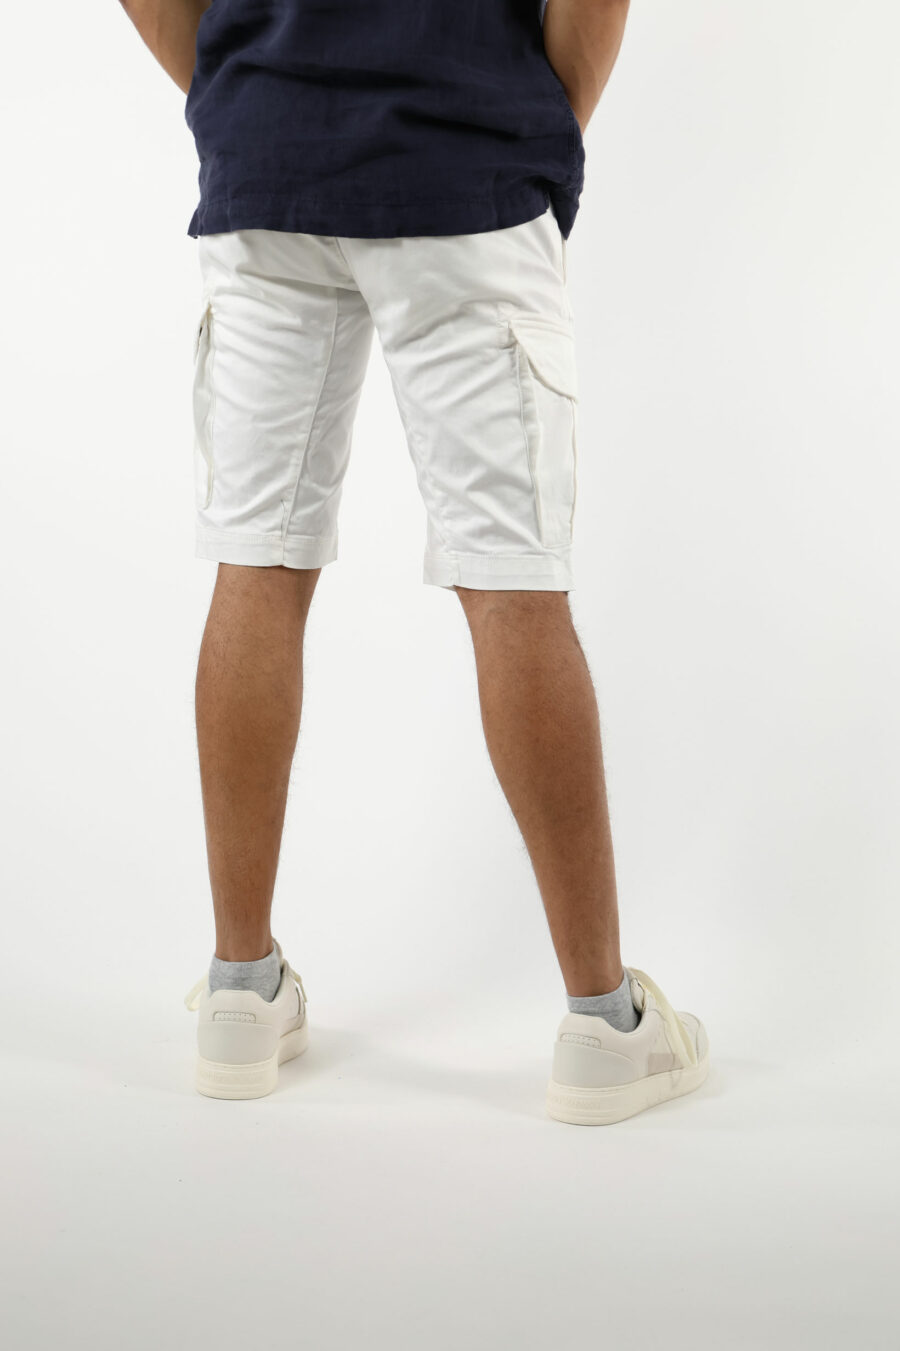 Pantalón corto blanco estilo cargo con minilogo lente - 111328